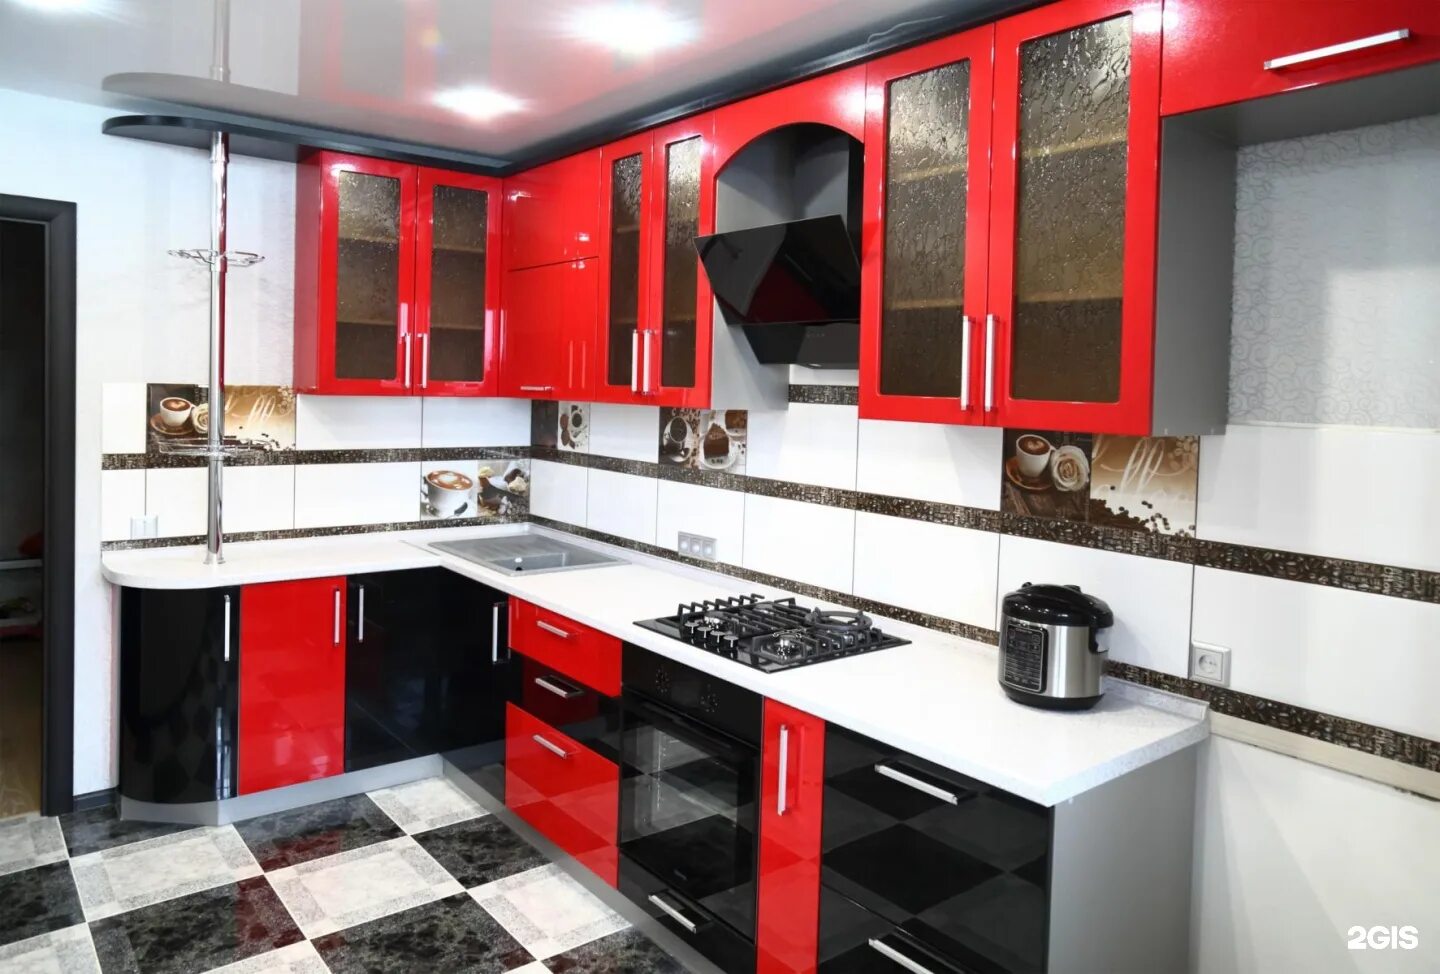 Кухня купить йошкар ола. Кухни Академия, Йошкар-Ола. Кухонный гарнитур красный с черным. Кухонный гарнитур черно красный. Кухня красно черная угловая.